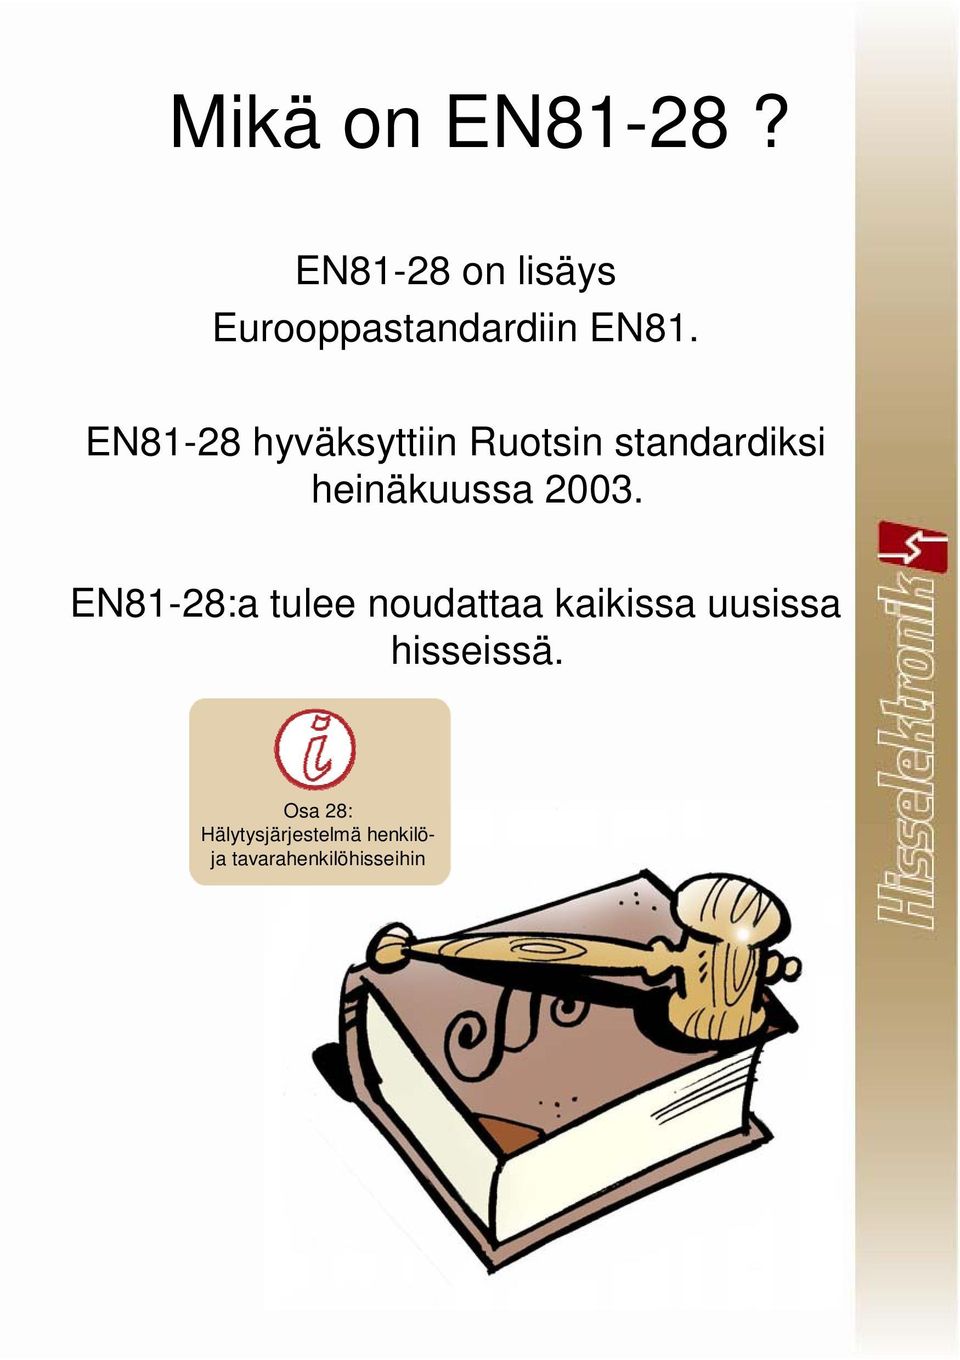 EN81-28 hyväksyttiin Ruotsin standardiksi heinäkuussa 2003.